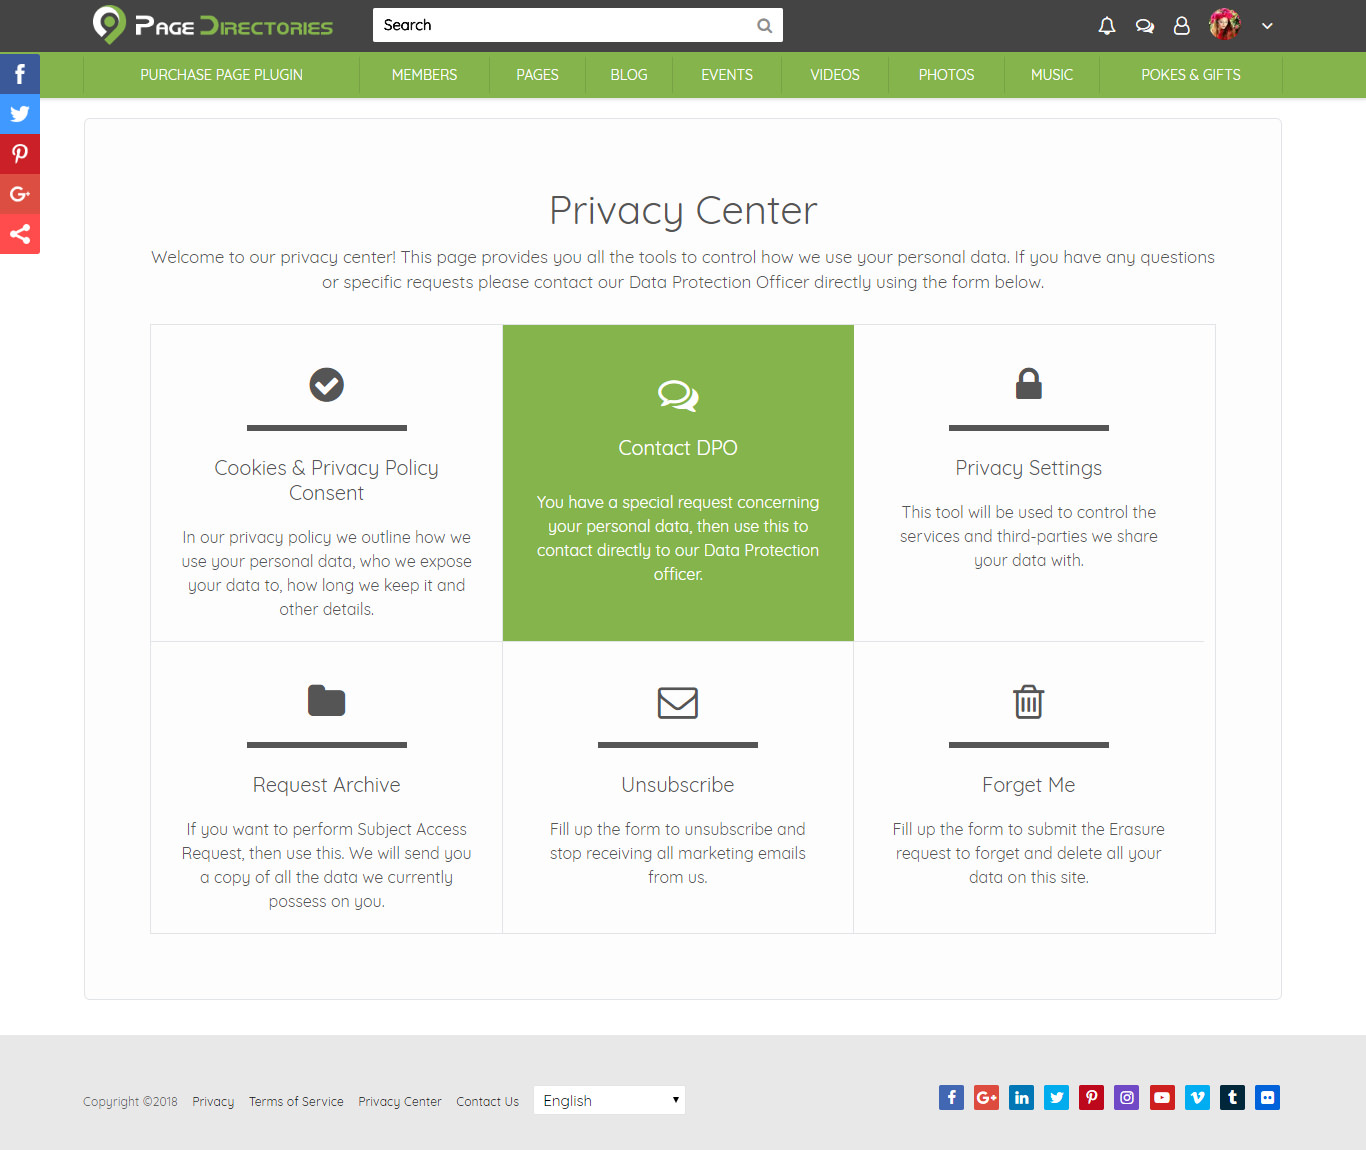 Privacy Center